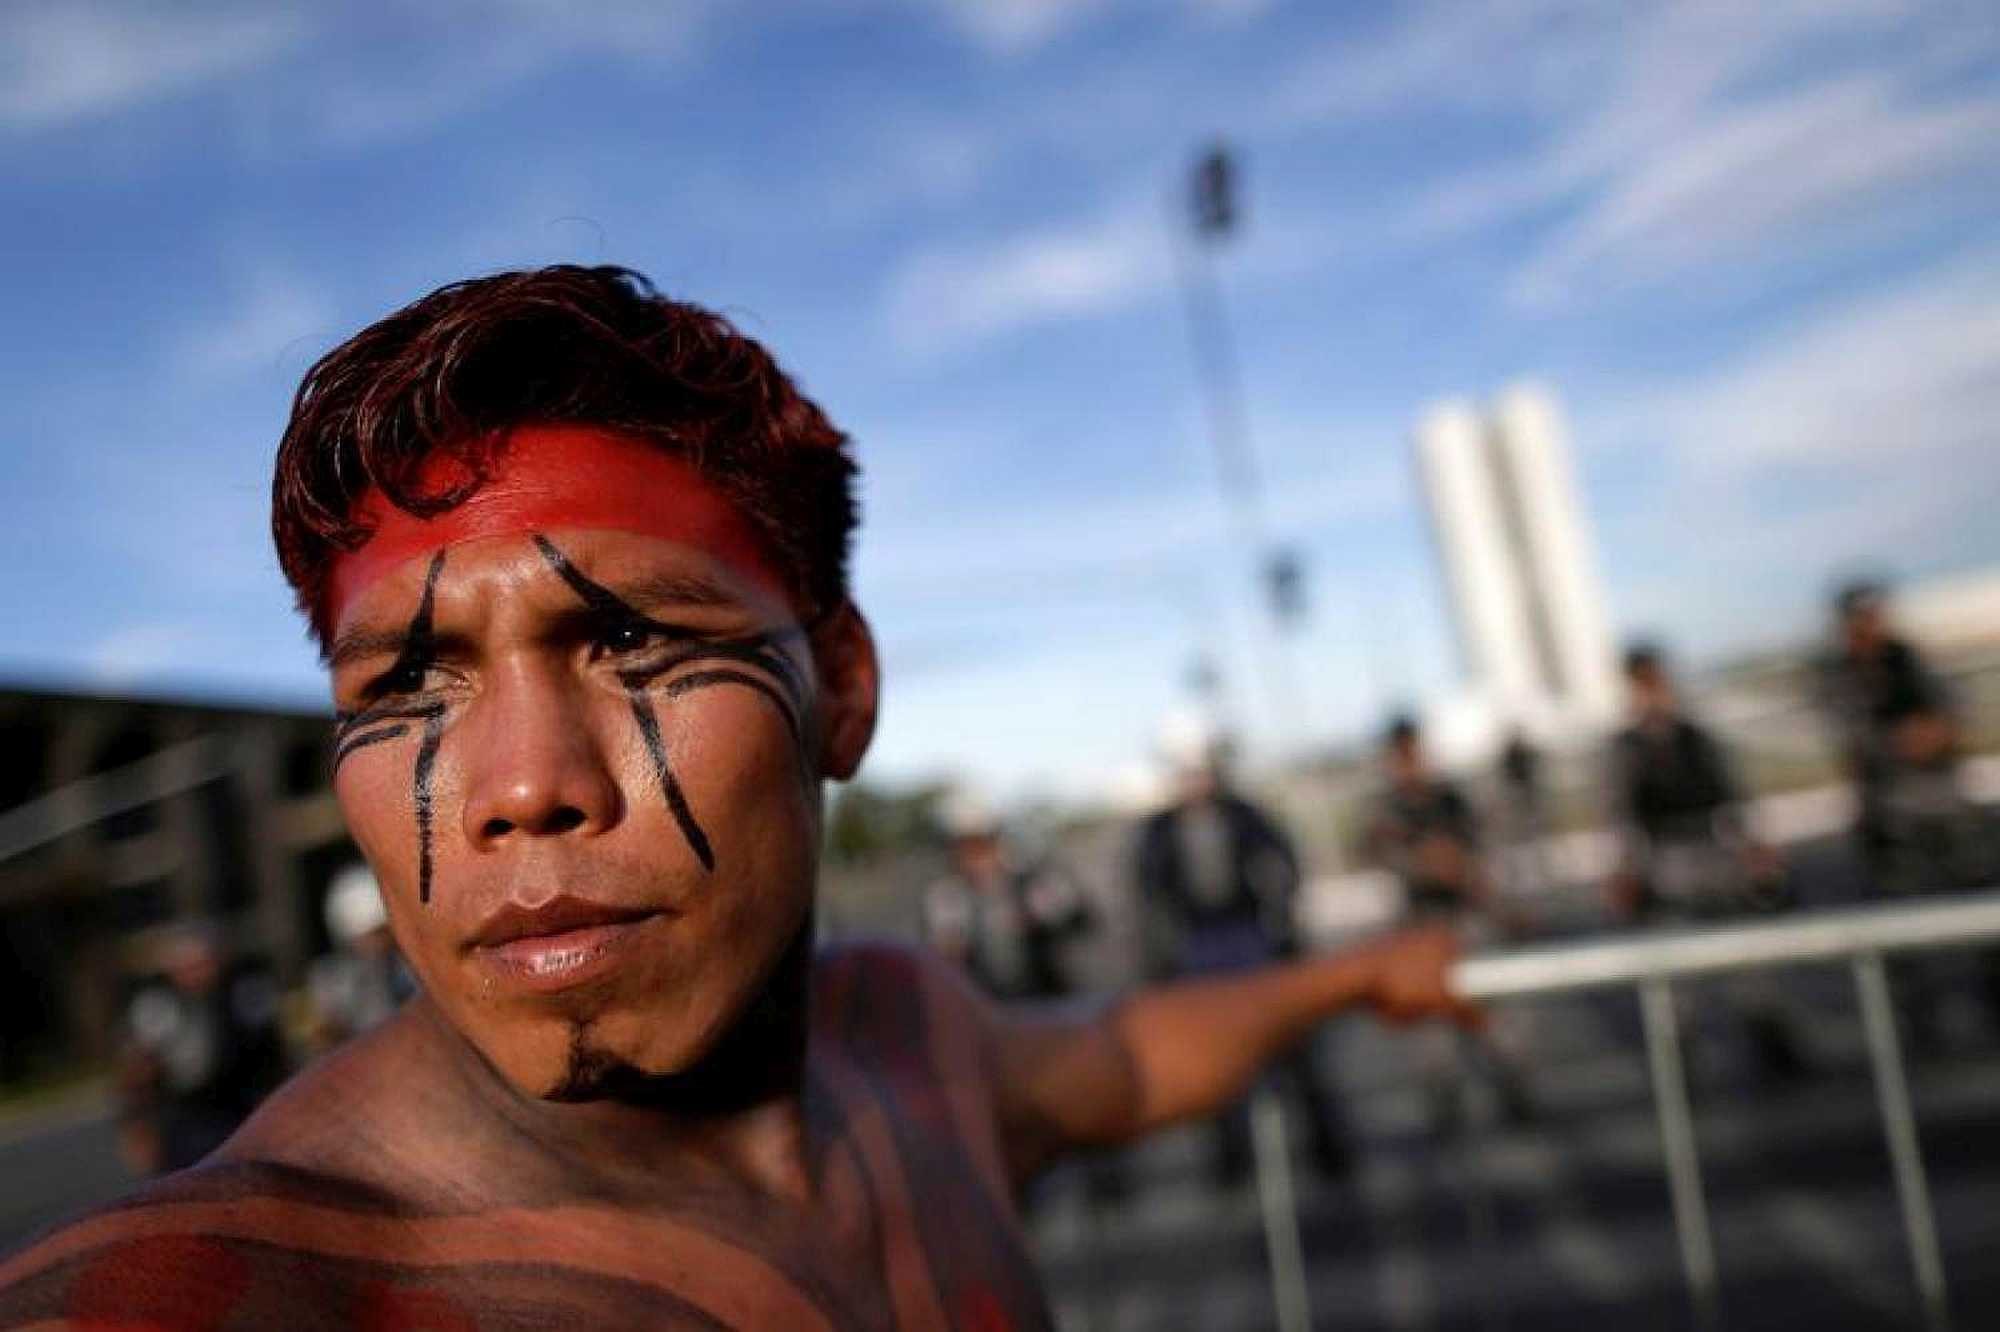 A Brazilian Indian demonstrates in Brasília - Ueslei Marcelino/Reuters